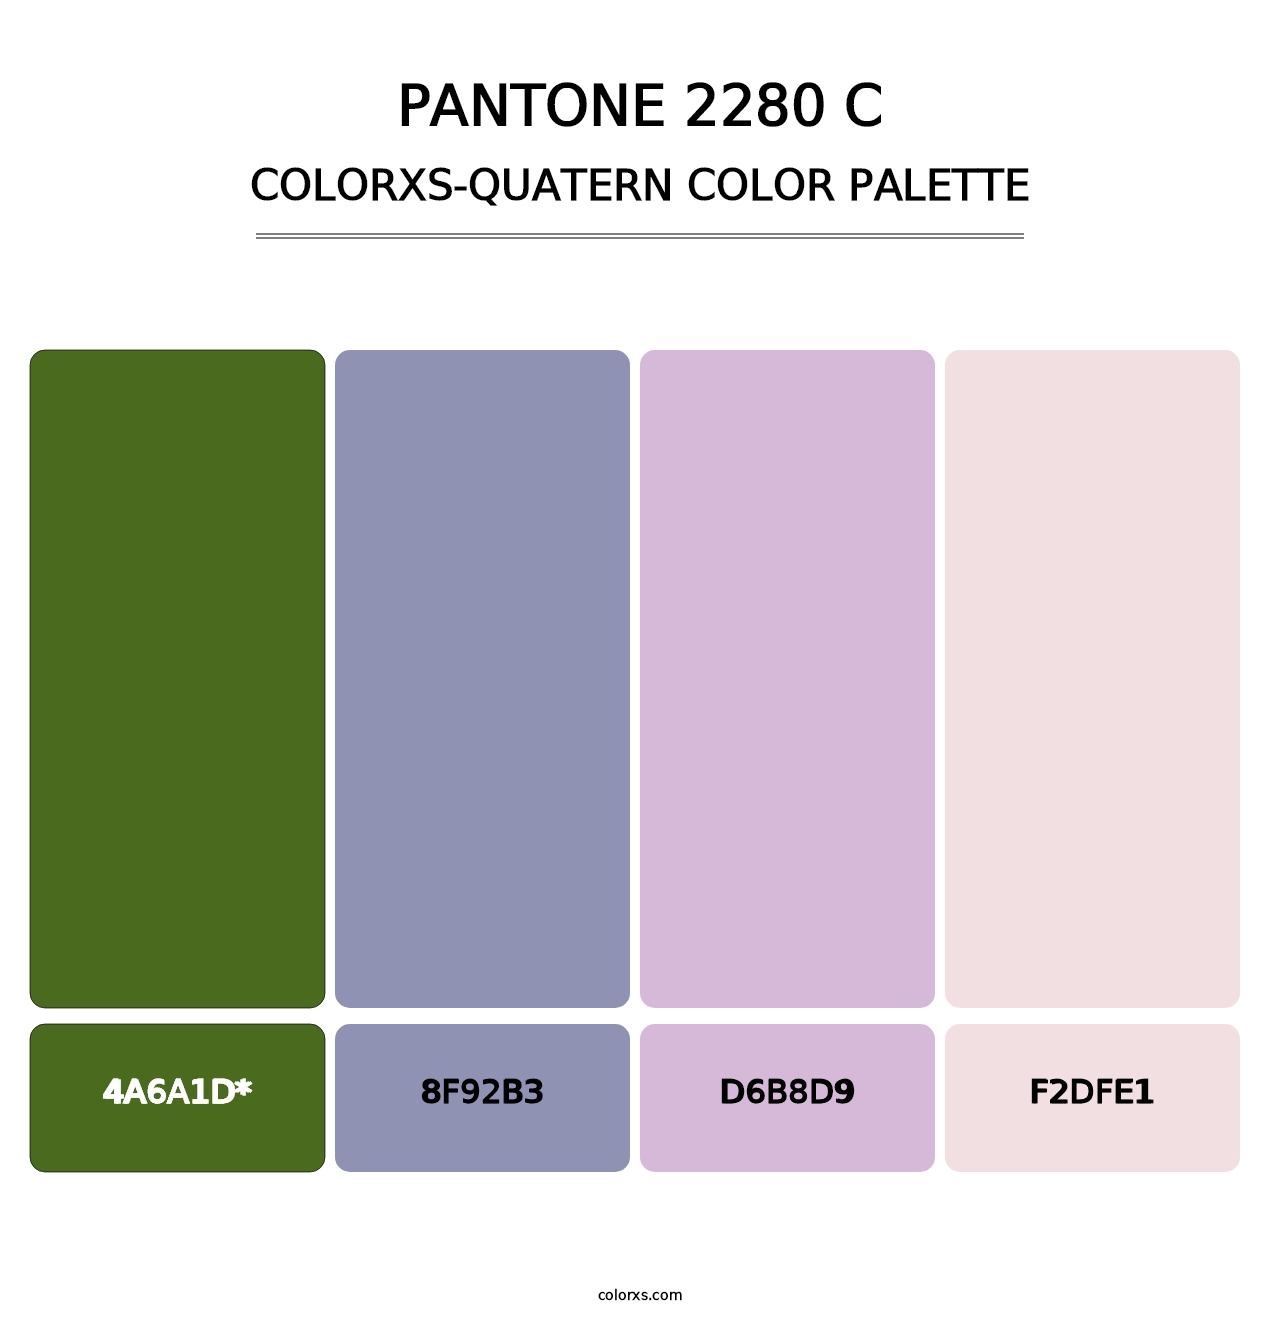 PANTONE 2280 C - Colorxs Quatern Palette